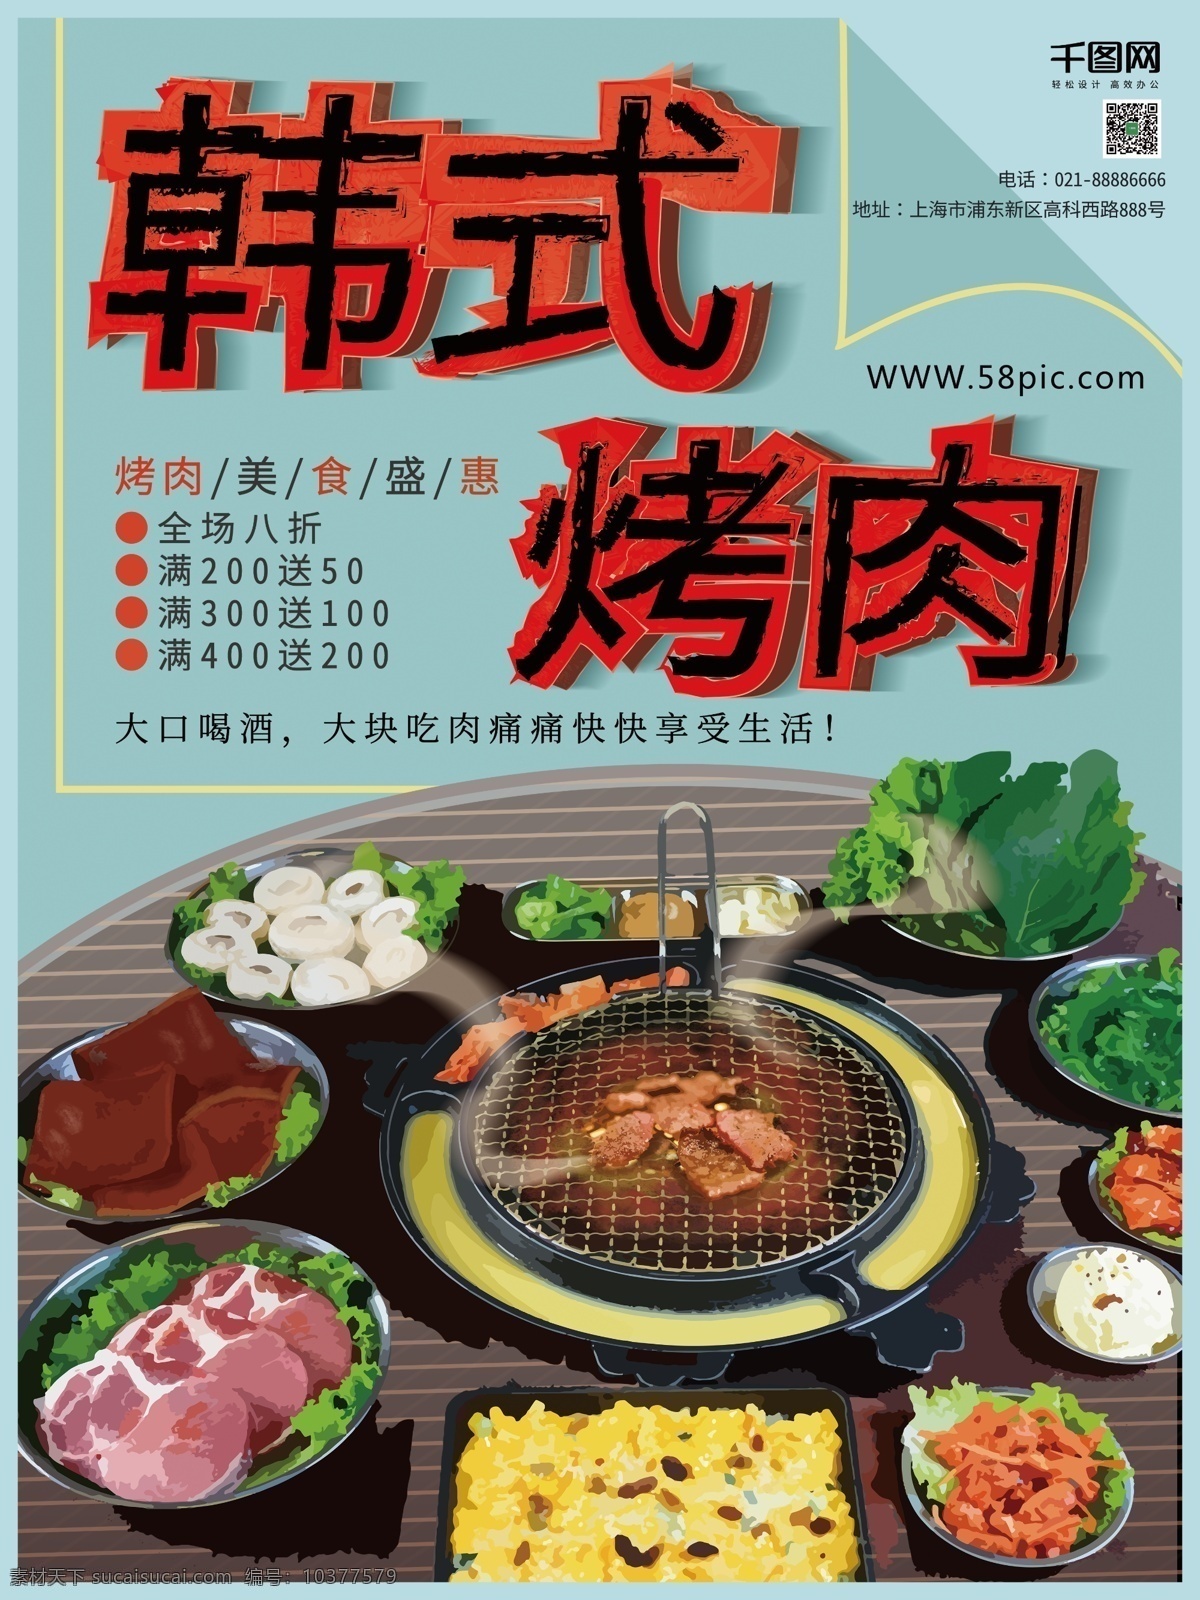 手绘 风 韩式 烤肉 促销 宣传海报 韩式烤肉 手绘风格 蓝色 烤肉促销 烤肉海报